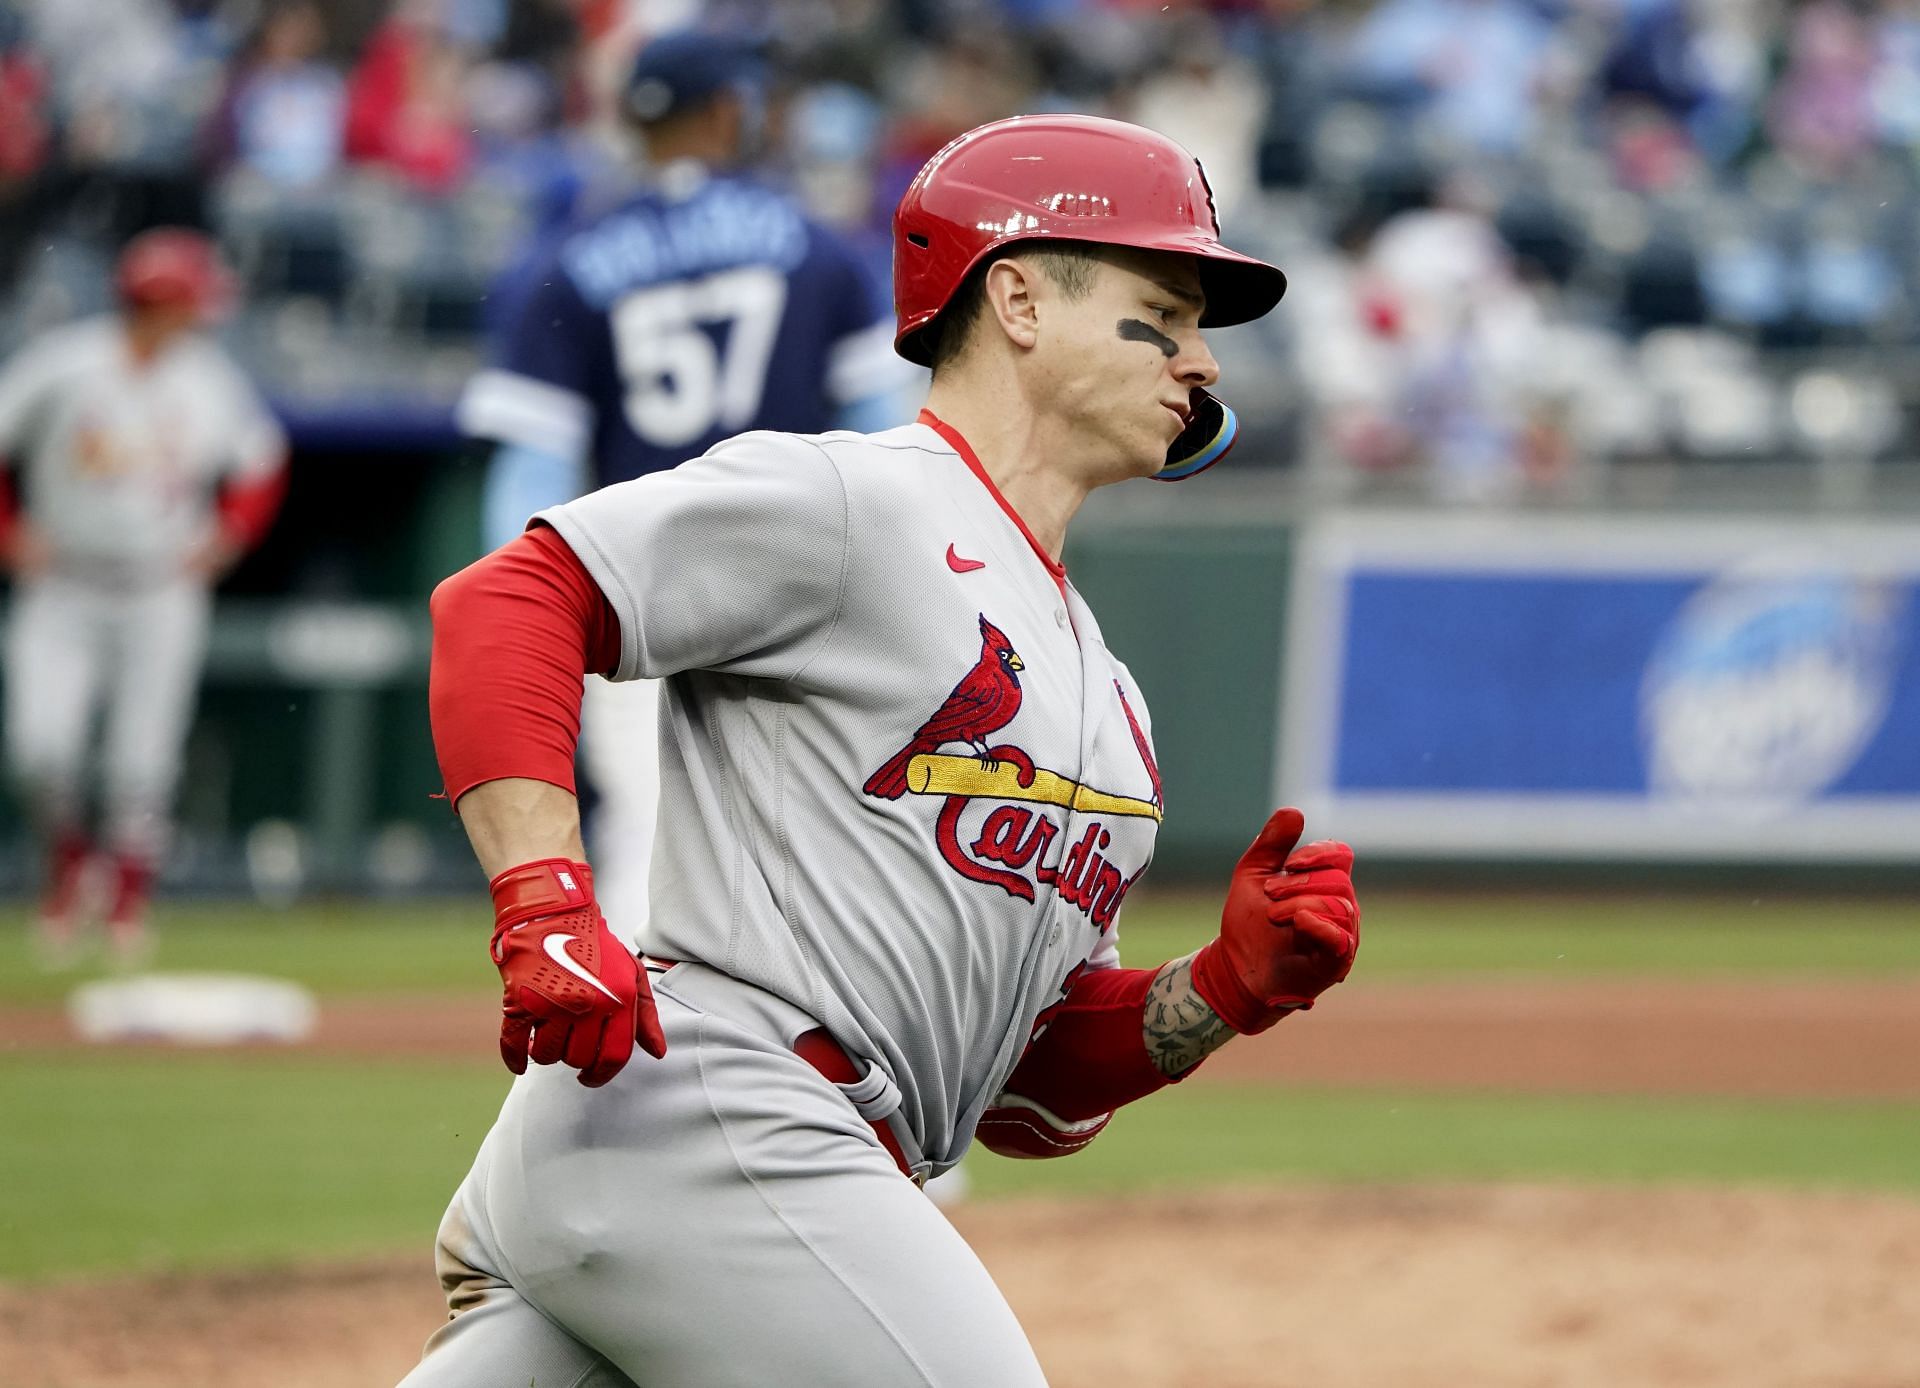 Cardinals' Tyler O'Neill insists he gave full effort despite